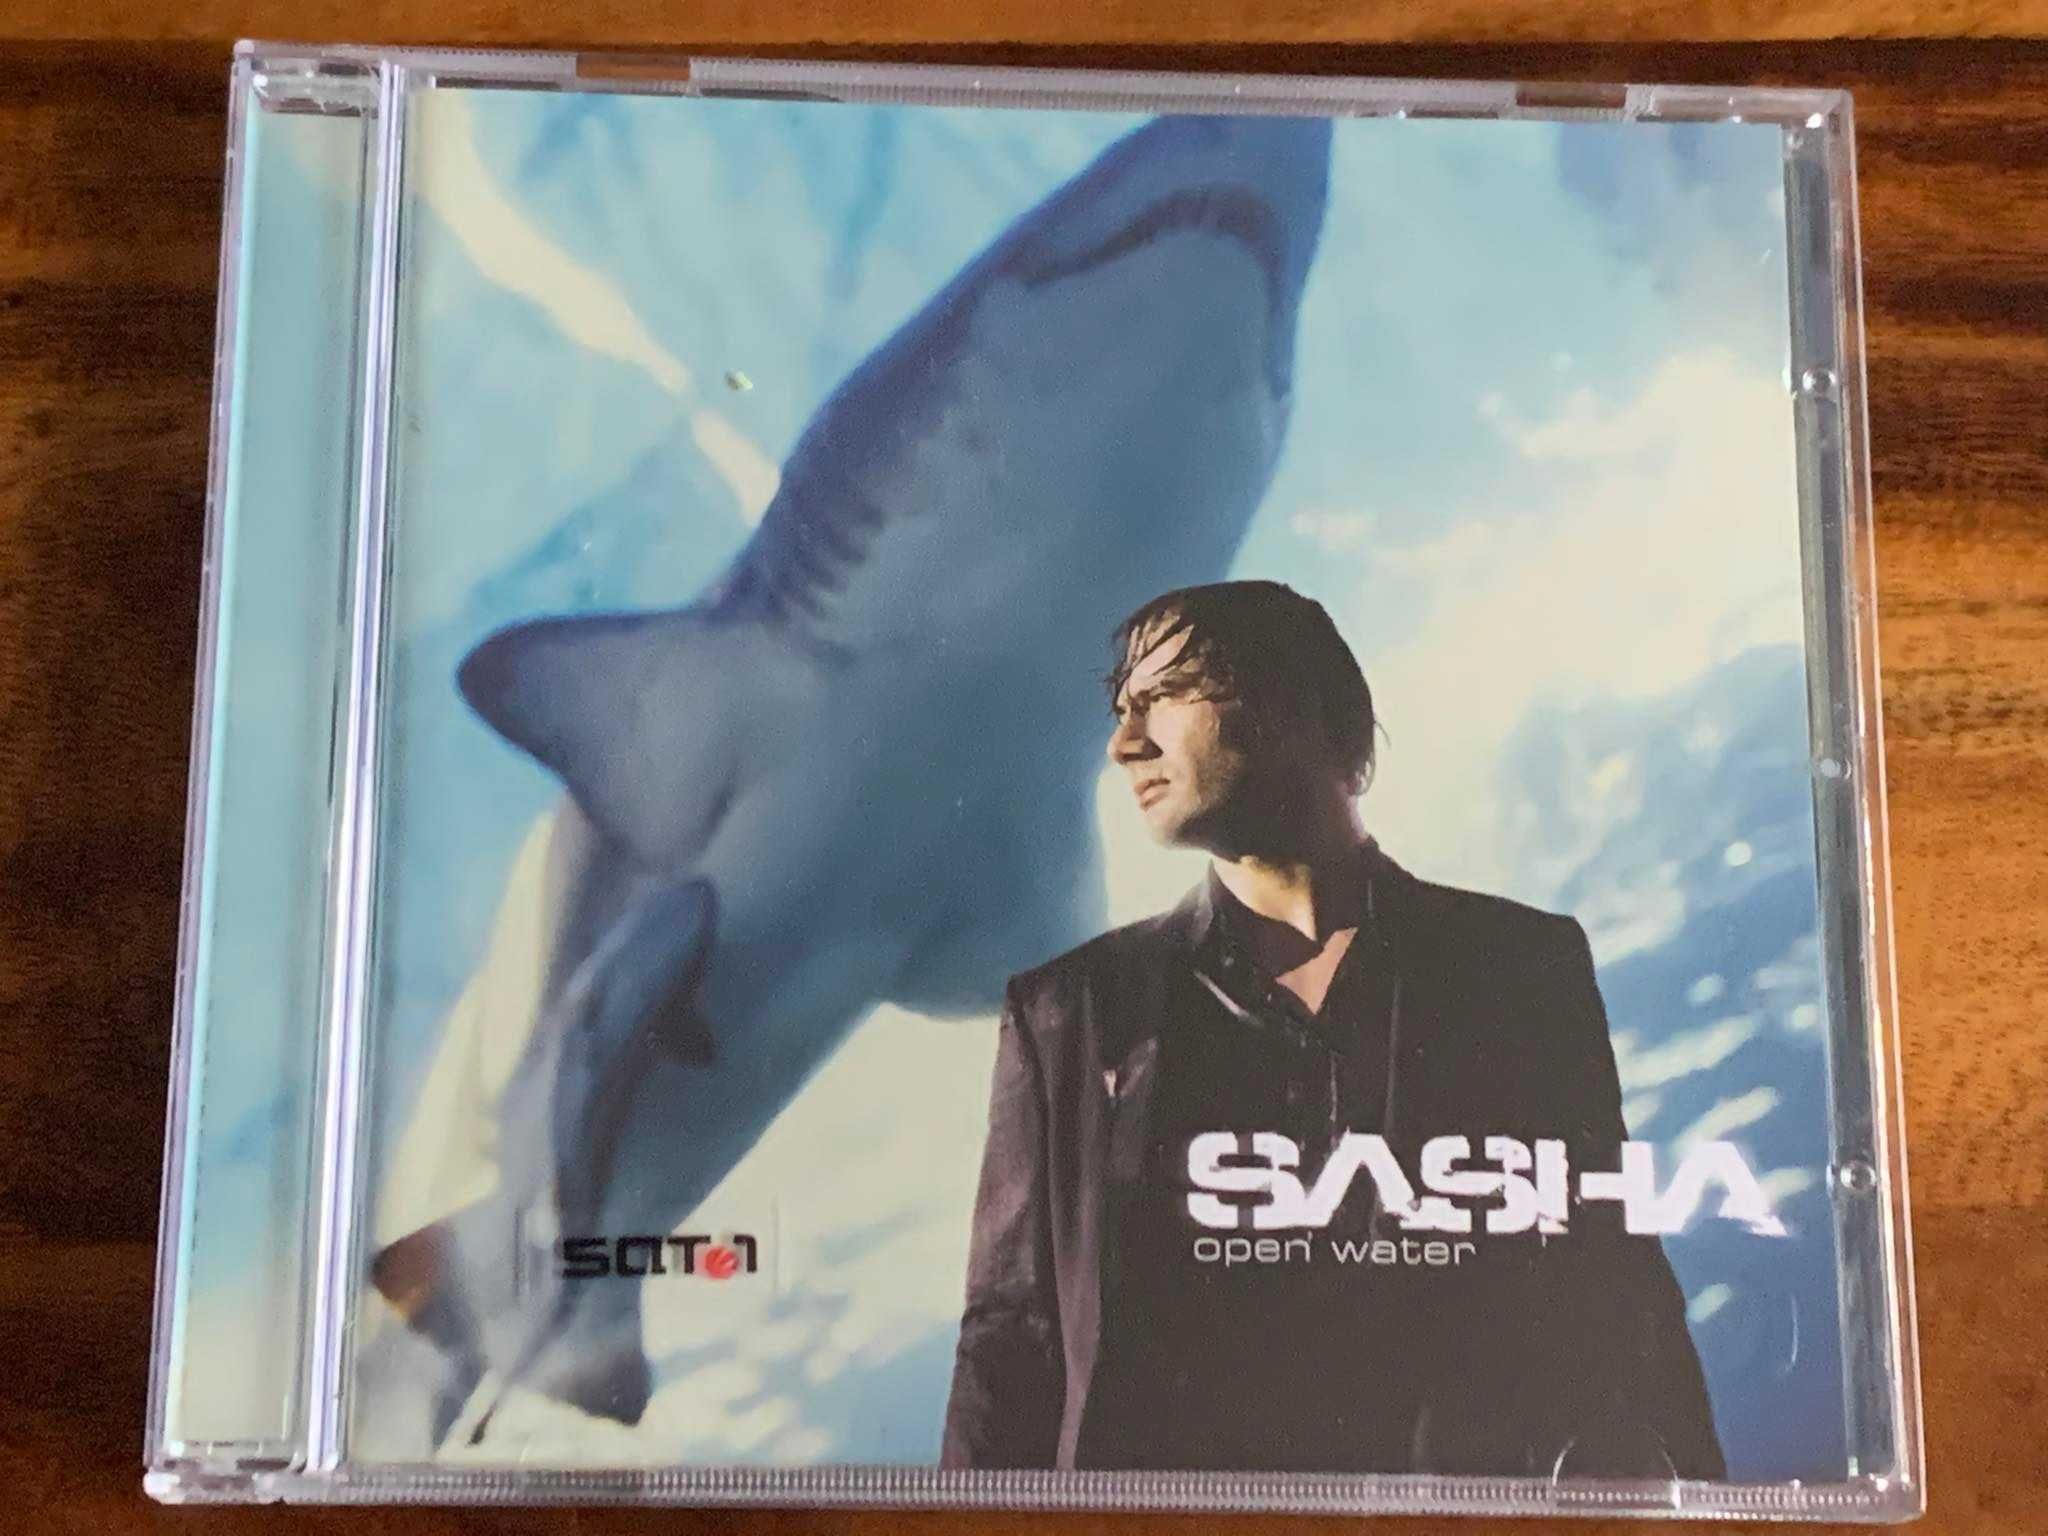 Sasha - Open Water - CD 2006r. - jak NOWA! (rare)